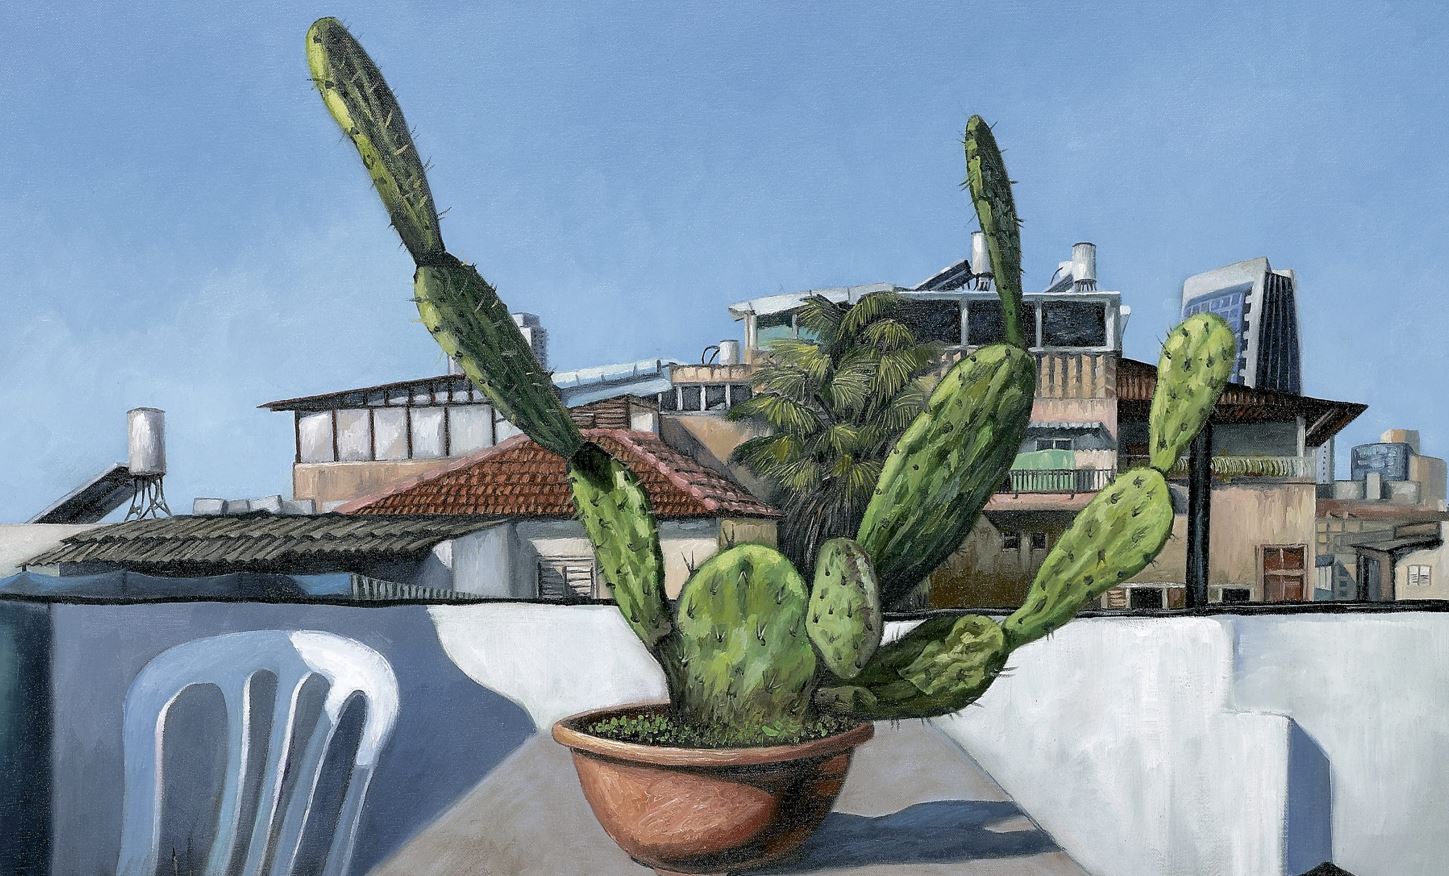 Durar Bacri, Cactus on the roof, 2021, Oil on canvas, 50 x 70 cm